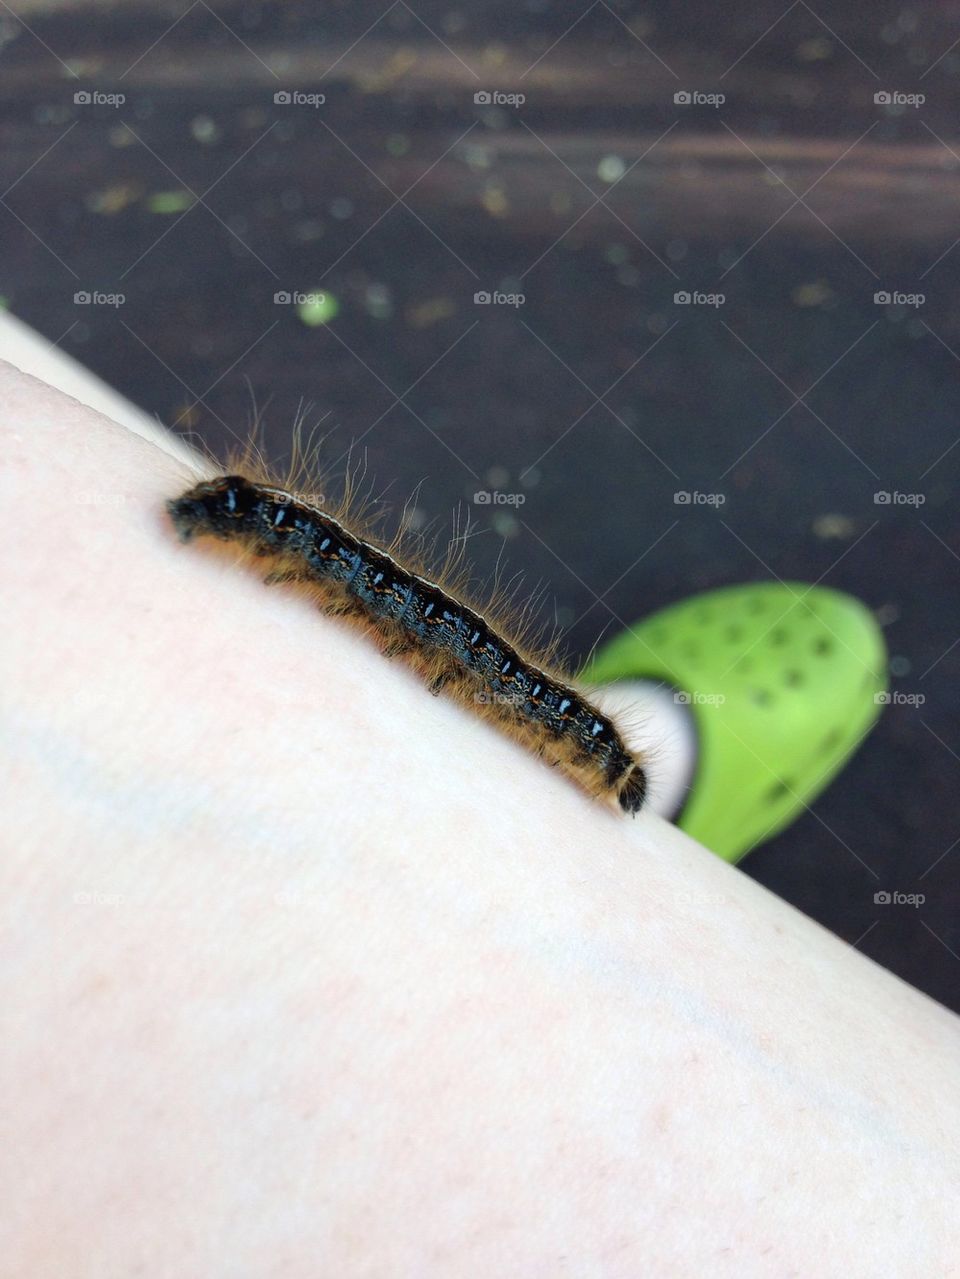 Caterpillar!